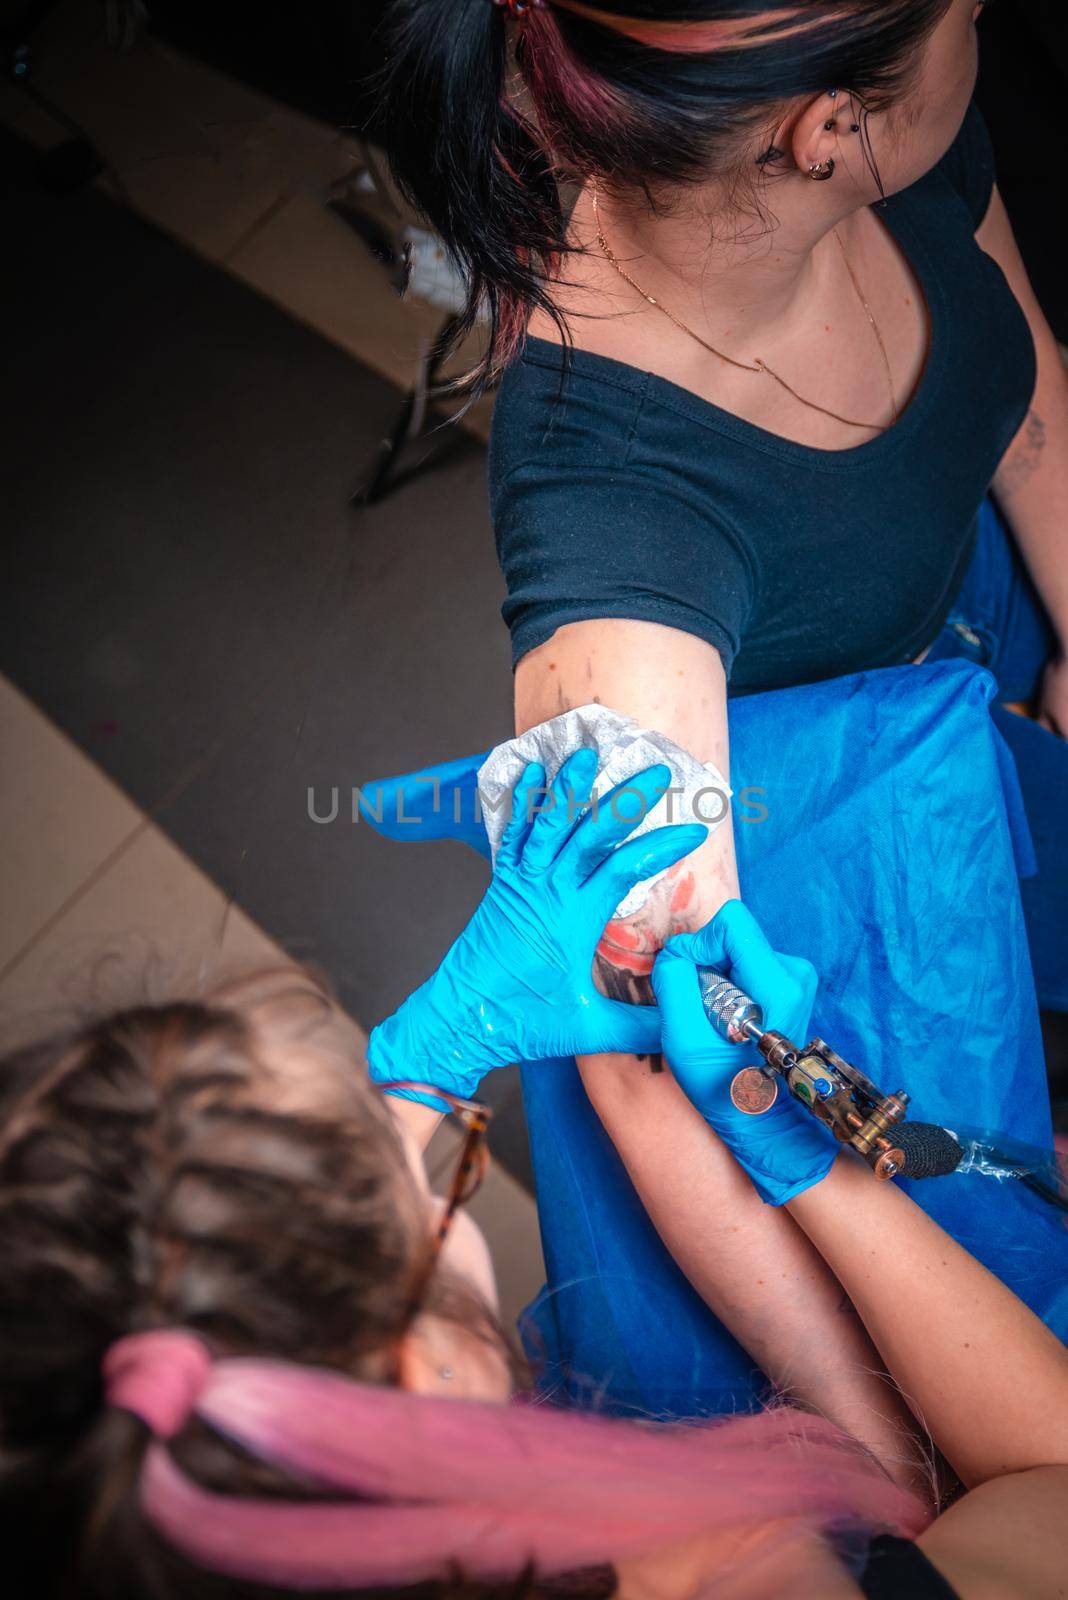 Professional tattooer demonstrates the process of getting tattoo in tattoo studio.